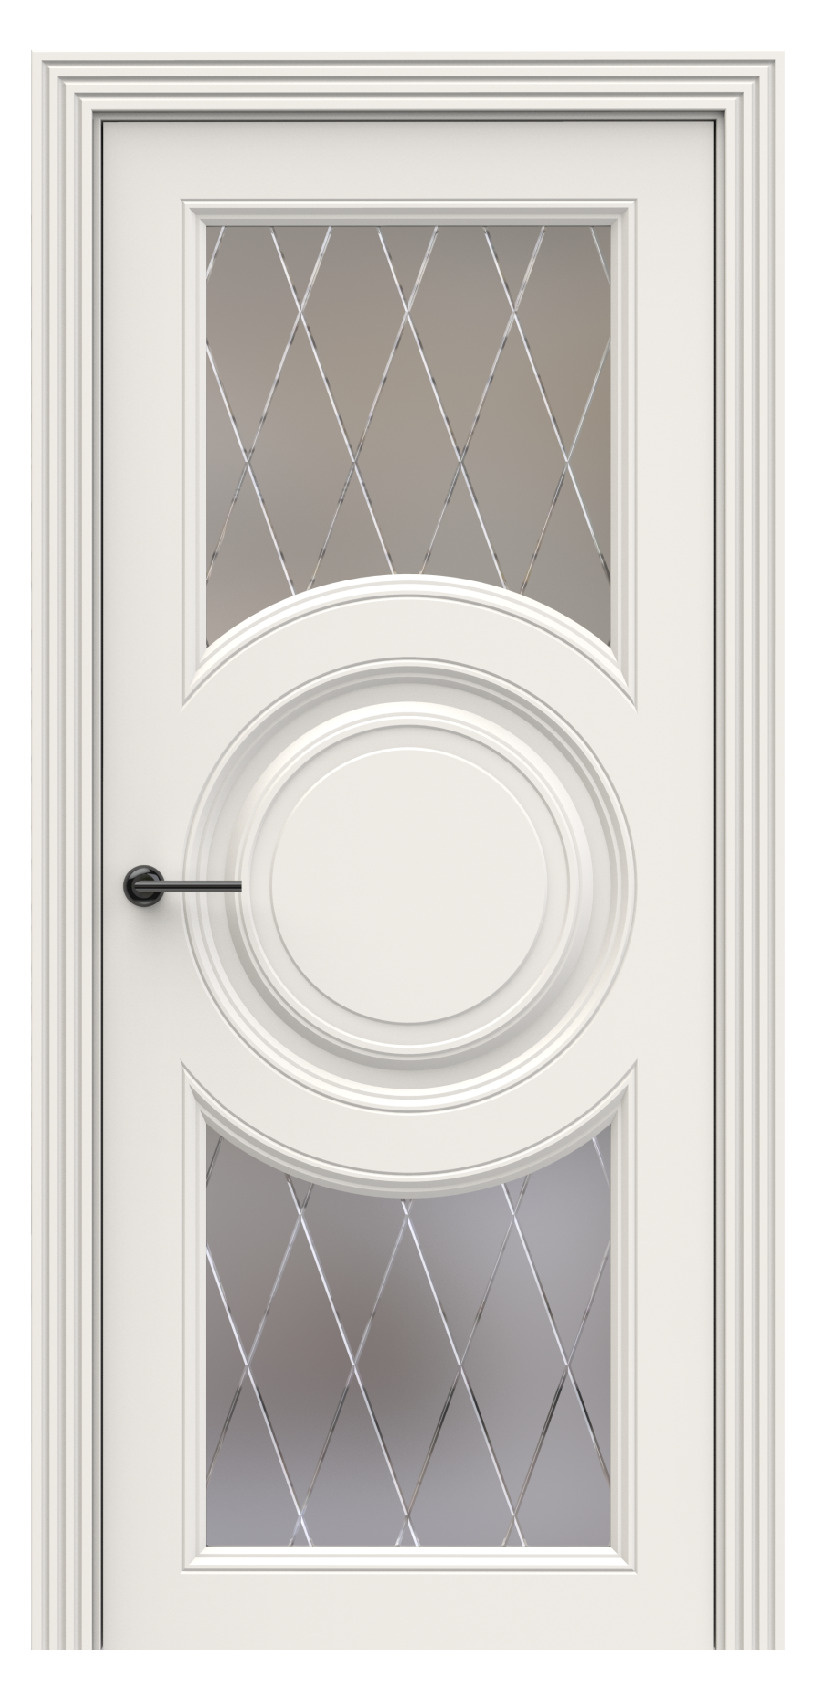 Questdoors Межкомнатная дверь QBR19, арт. 17932 - фото №1